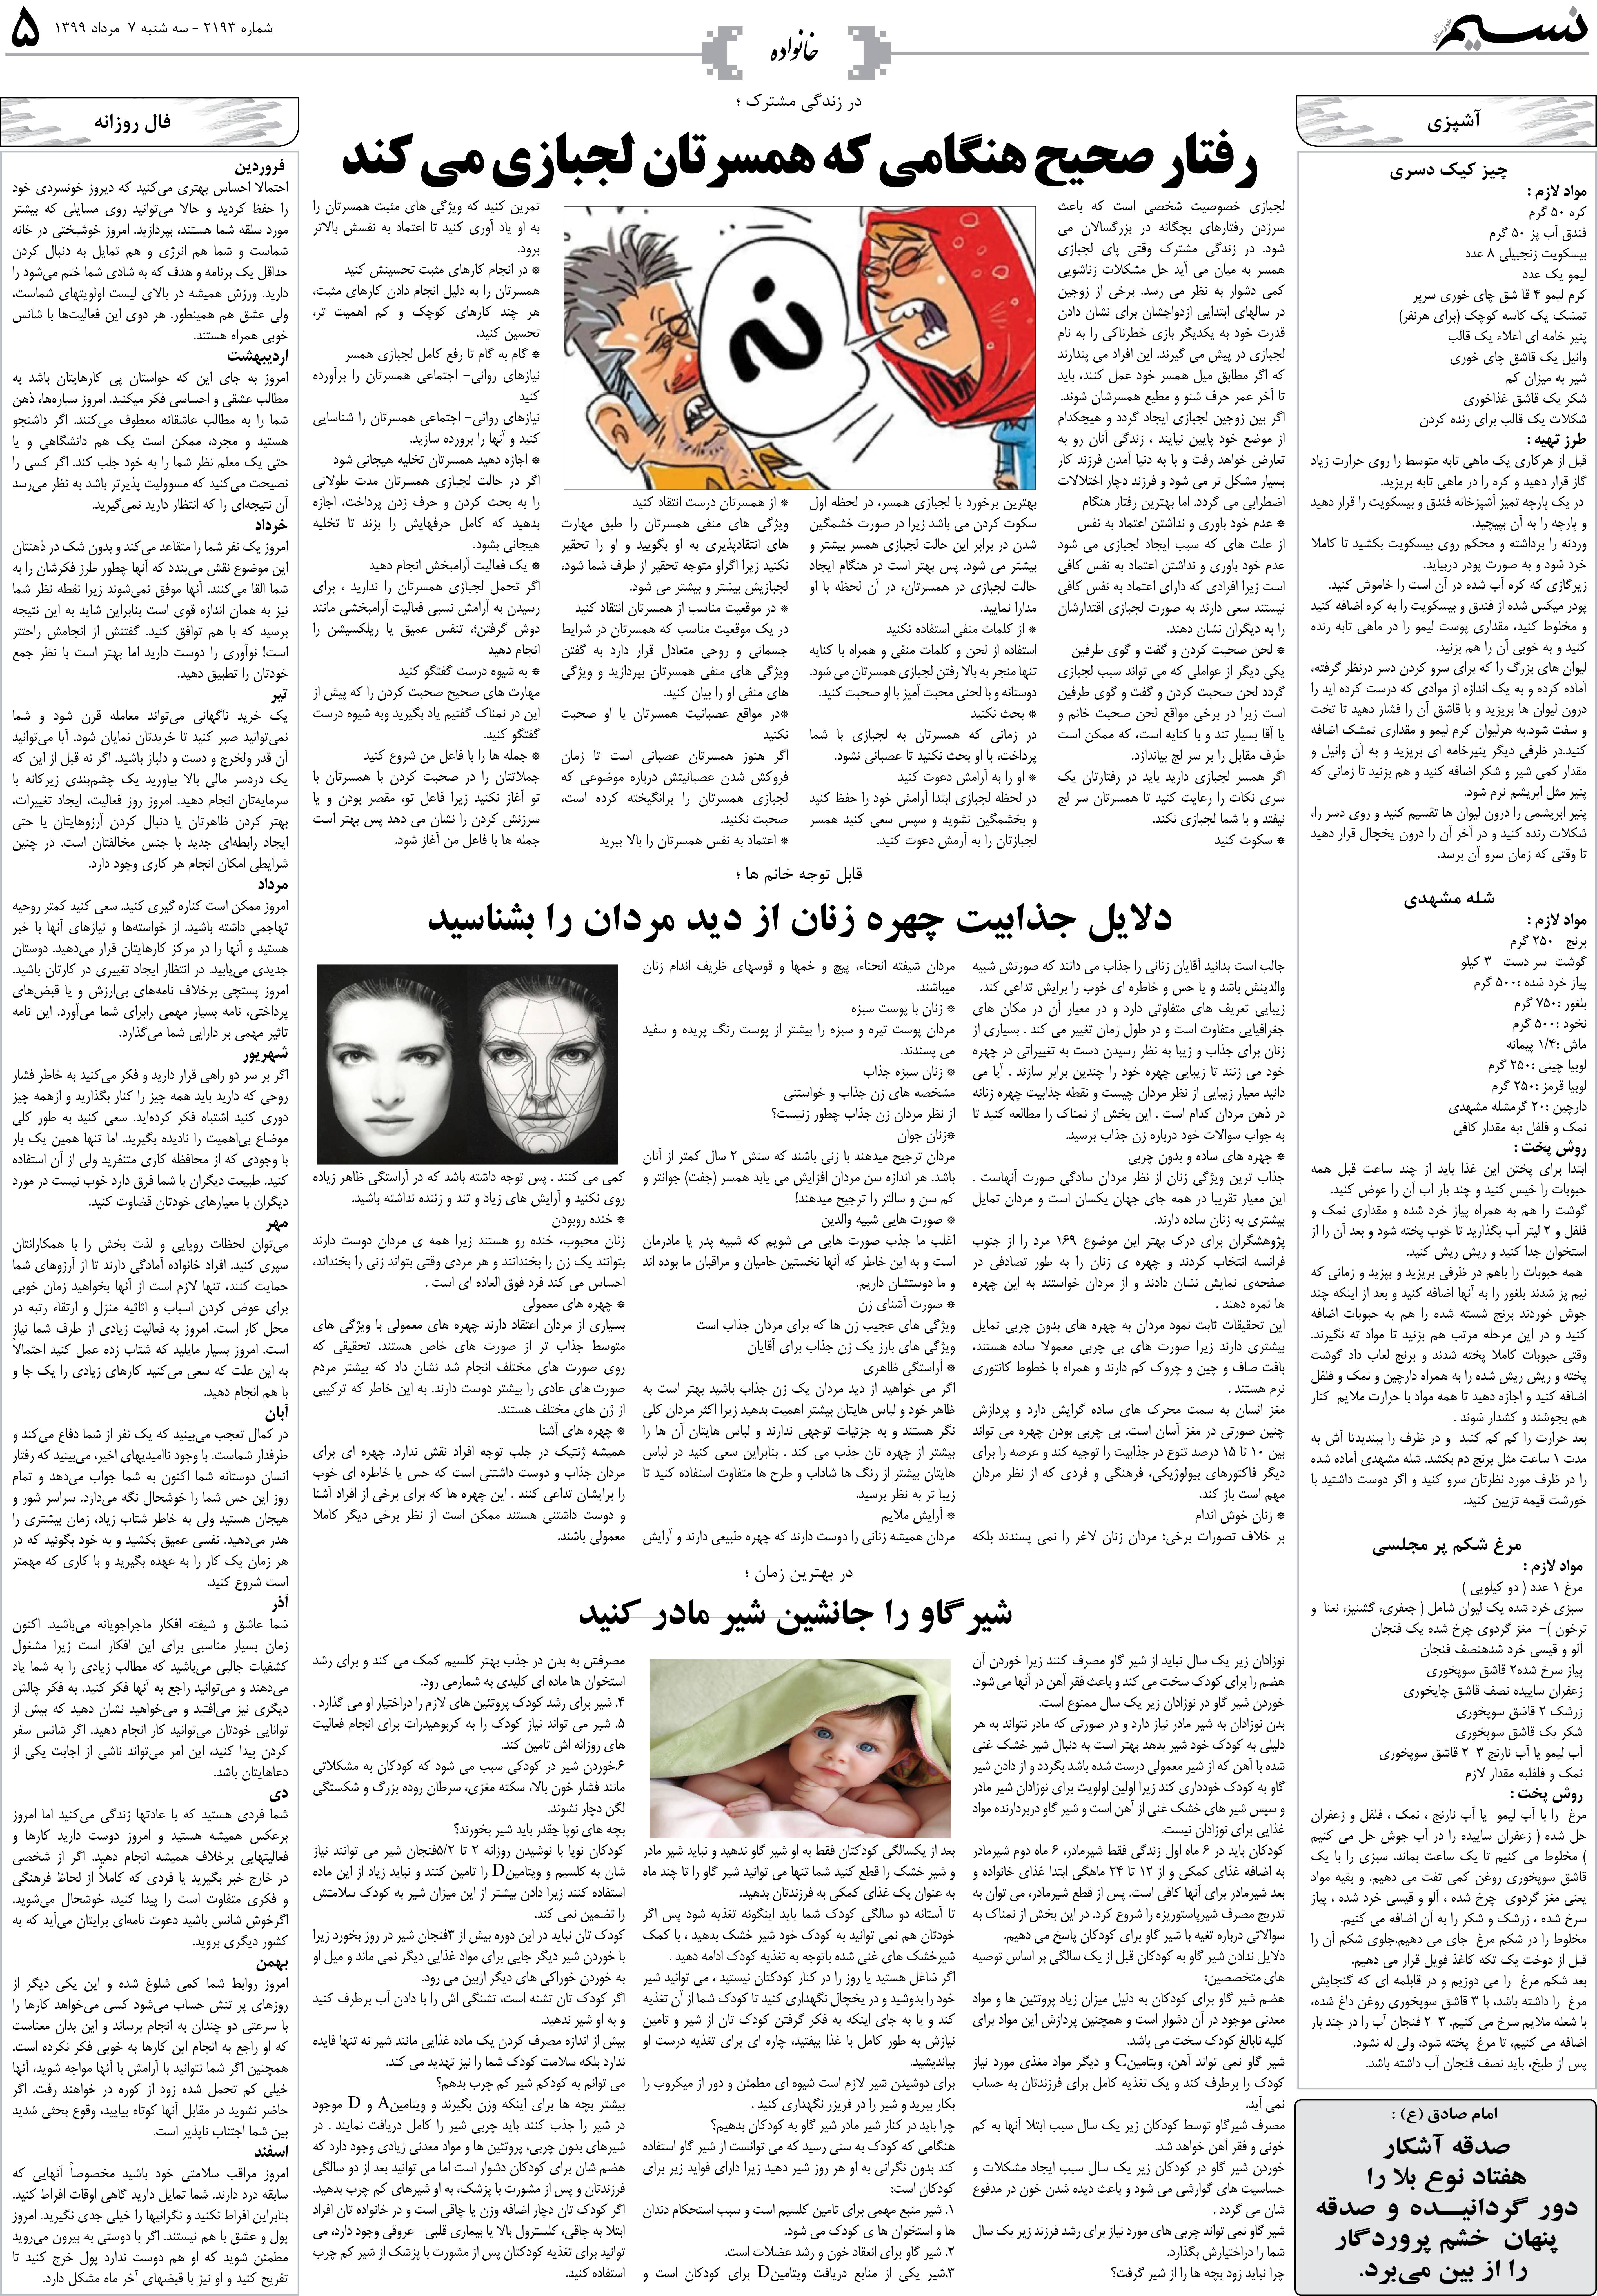 صفحه خانواده روزنامه نسیم شماره 2193